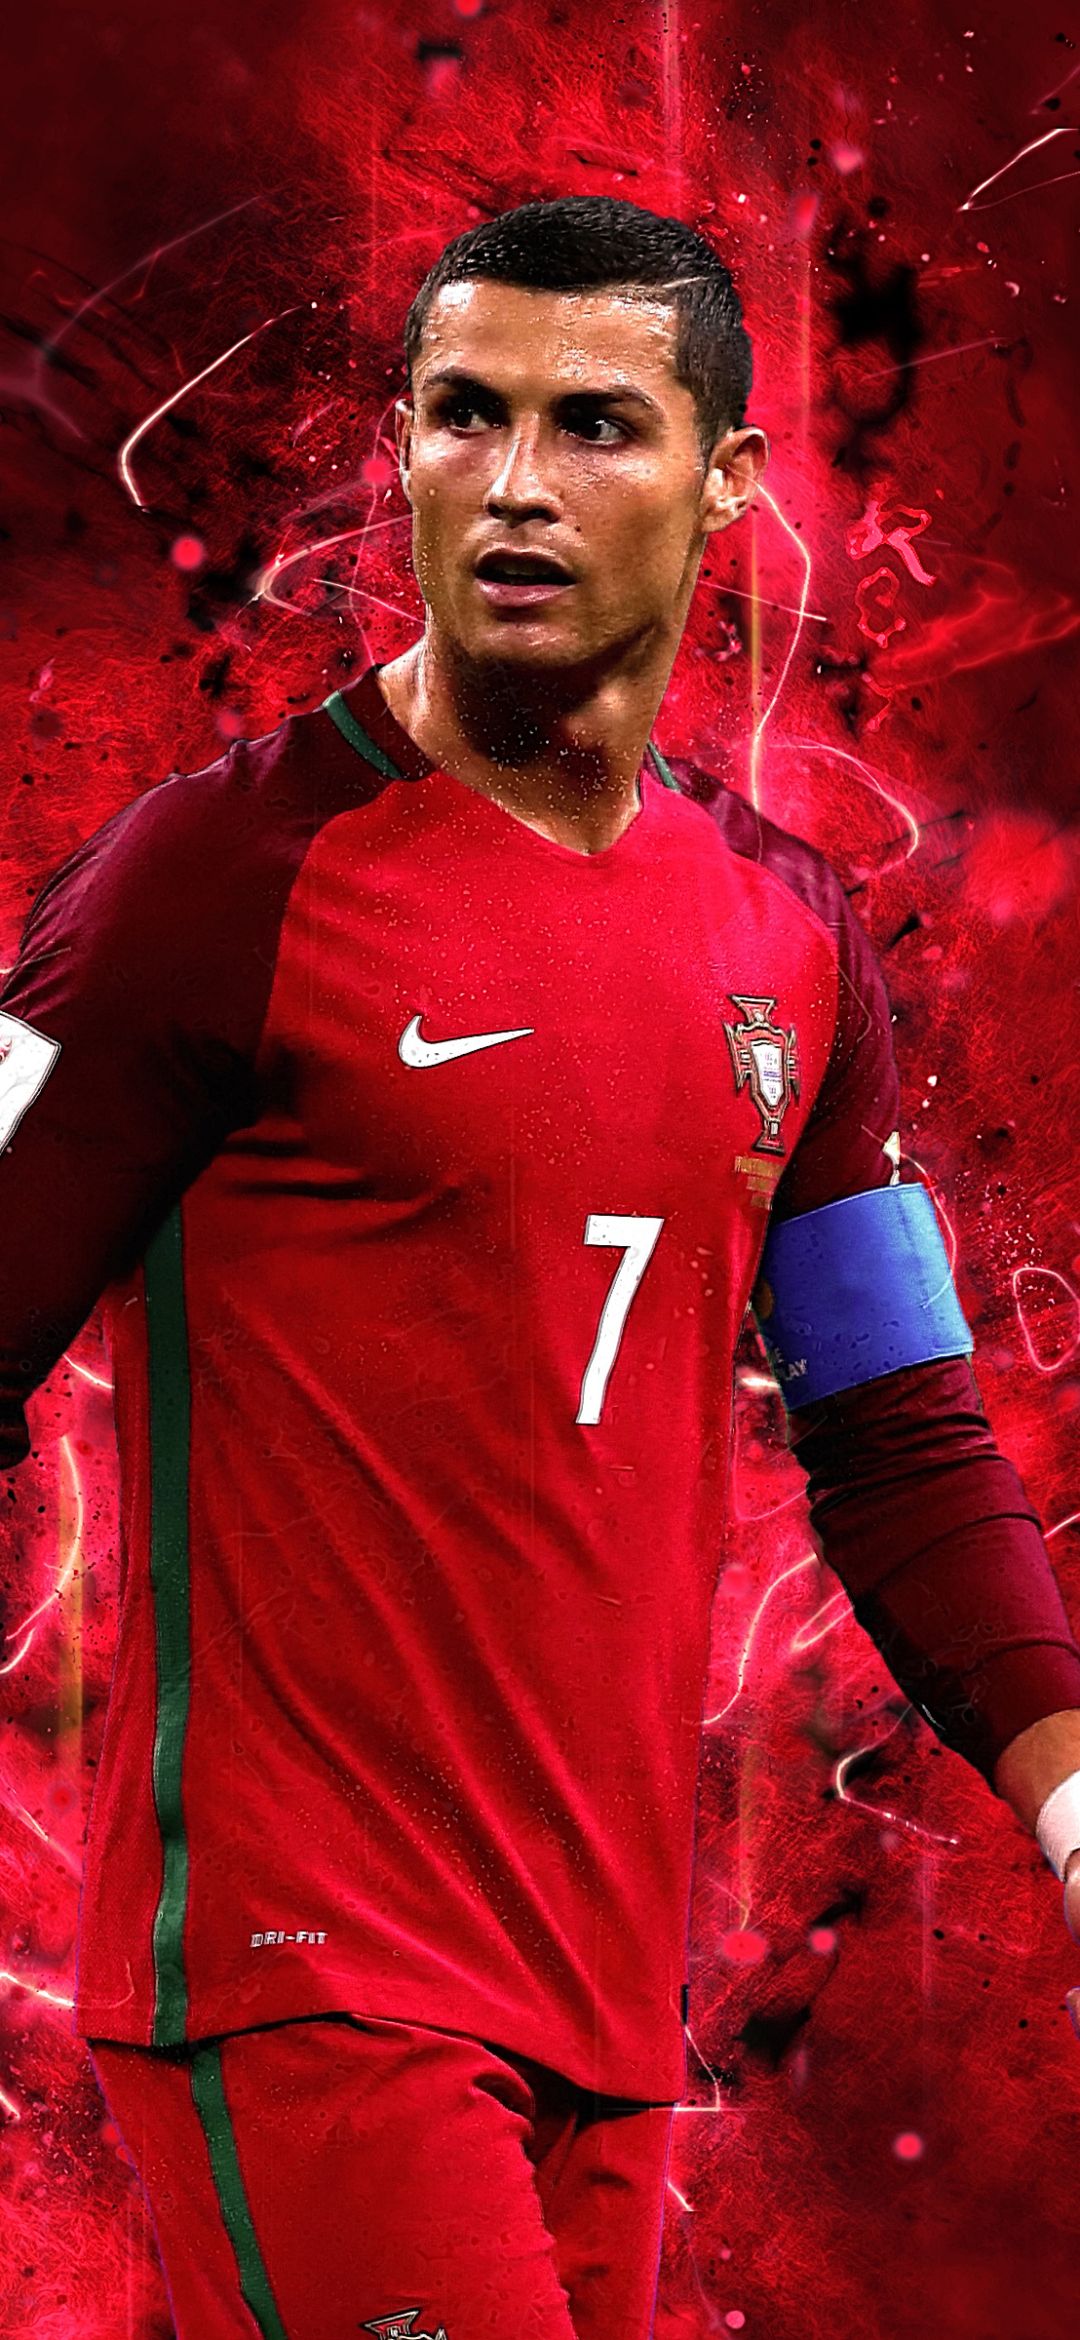 Mobile wallpaper: Sports, Cristiano Ronaldo, Soccer, Portuguese, 1179346 download the picture for free